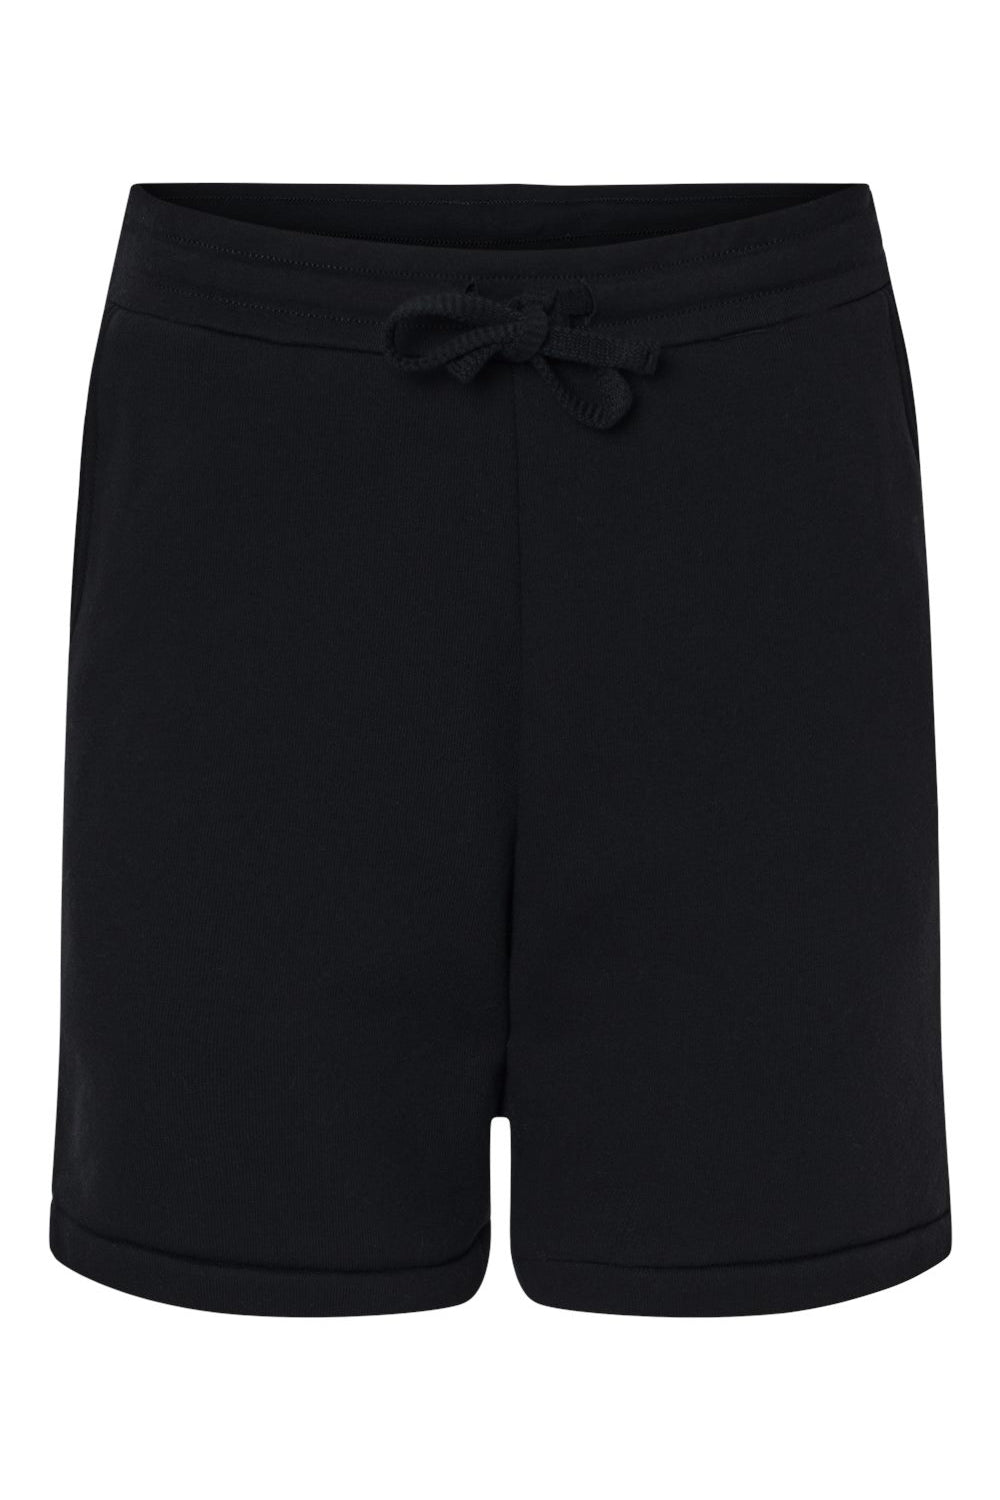 Bella + Canvas 3724 Mens Shorts w/ Pockets Black Flat Front